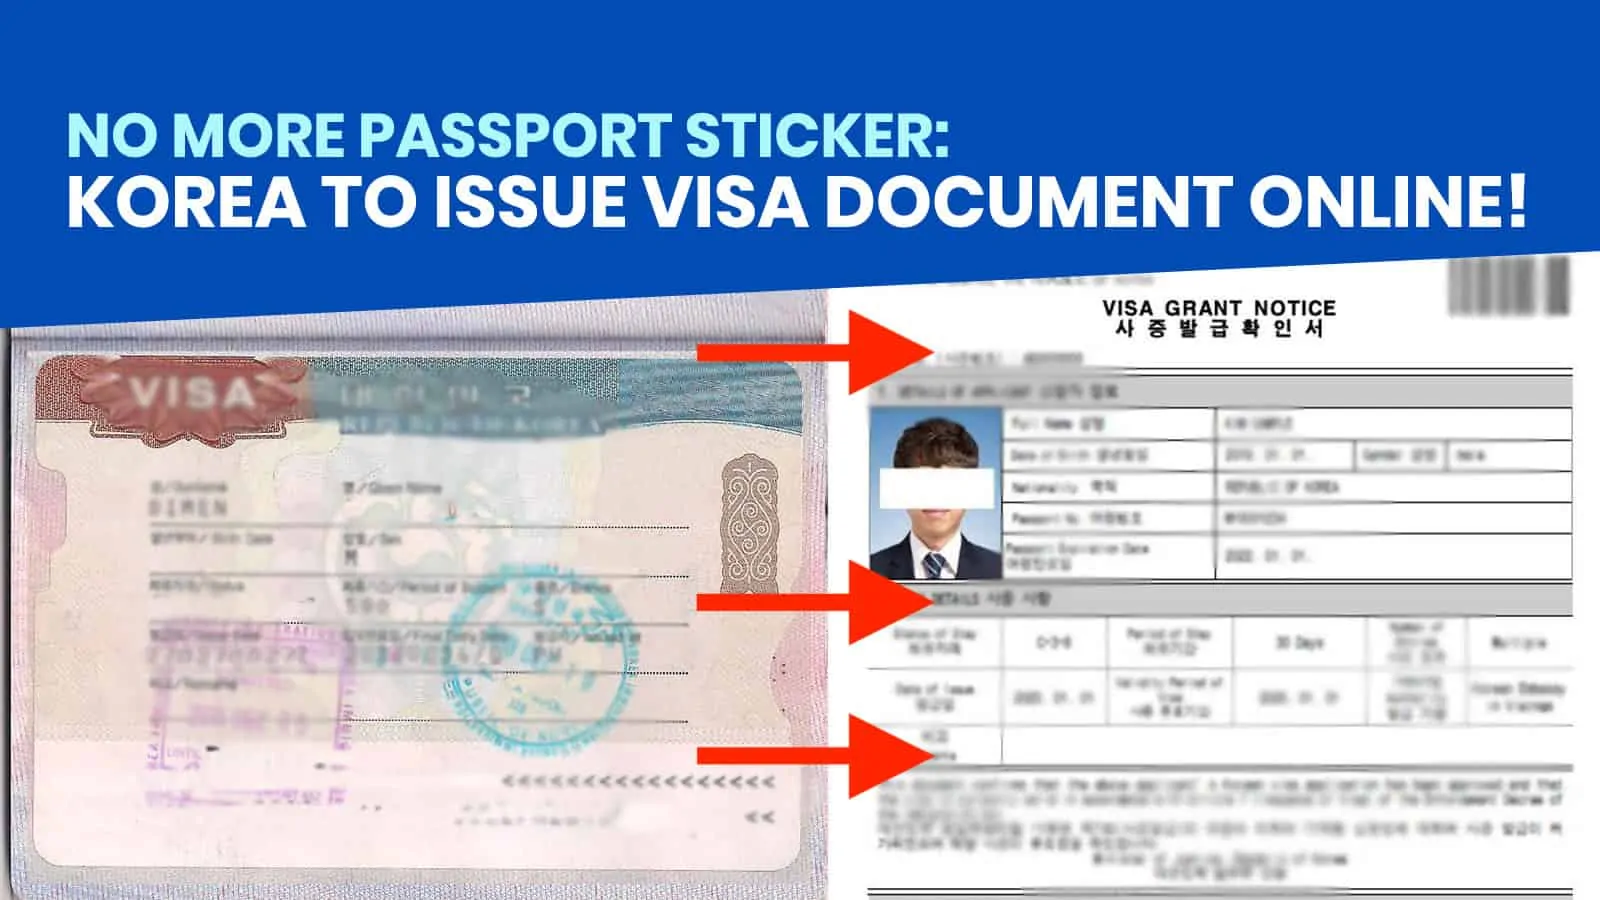 Hoe mijn visum krijgen? / Comment recevoir mon visa? / How to pick up my visa?